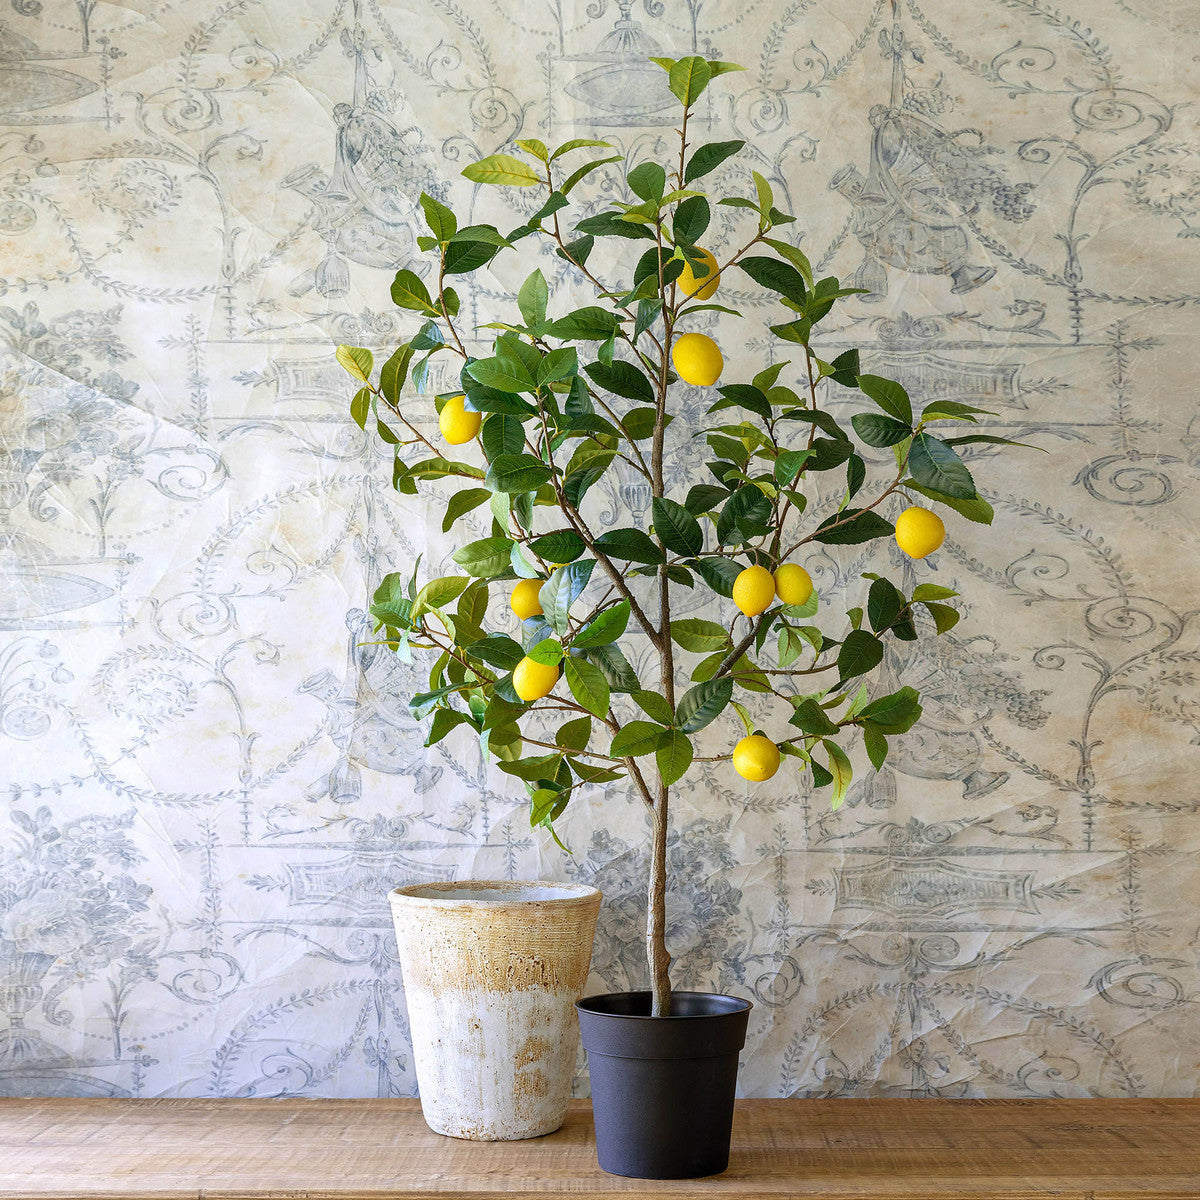 Lovecup Lemon Tree in Plastic Pot L702